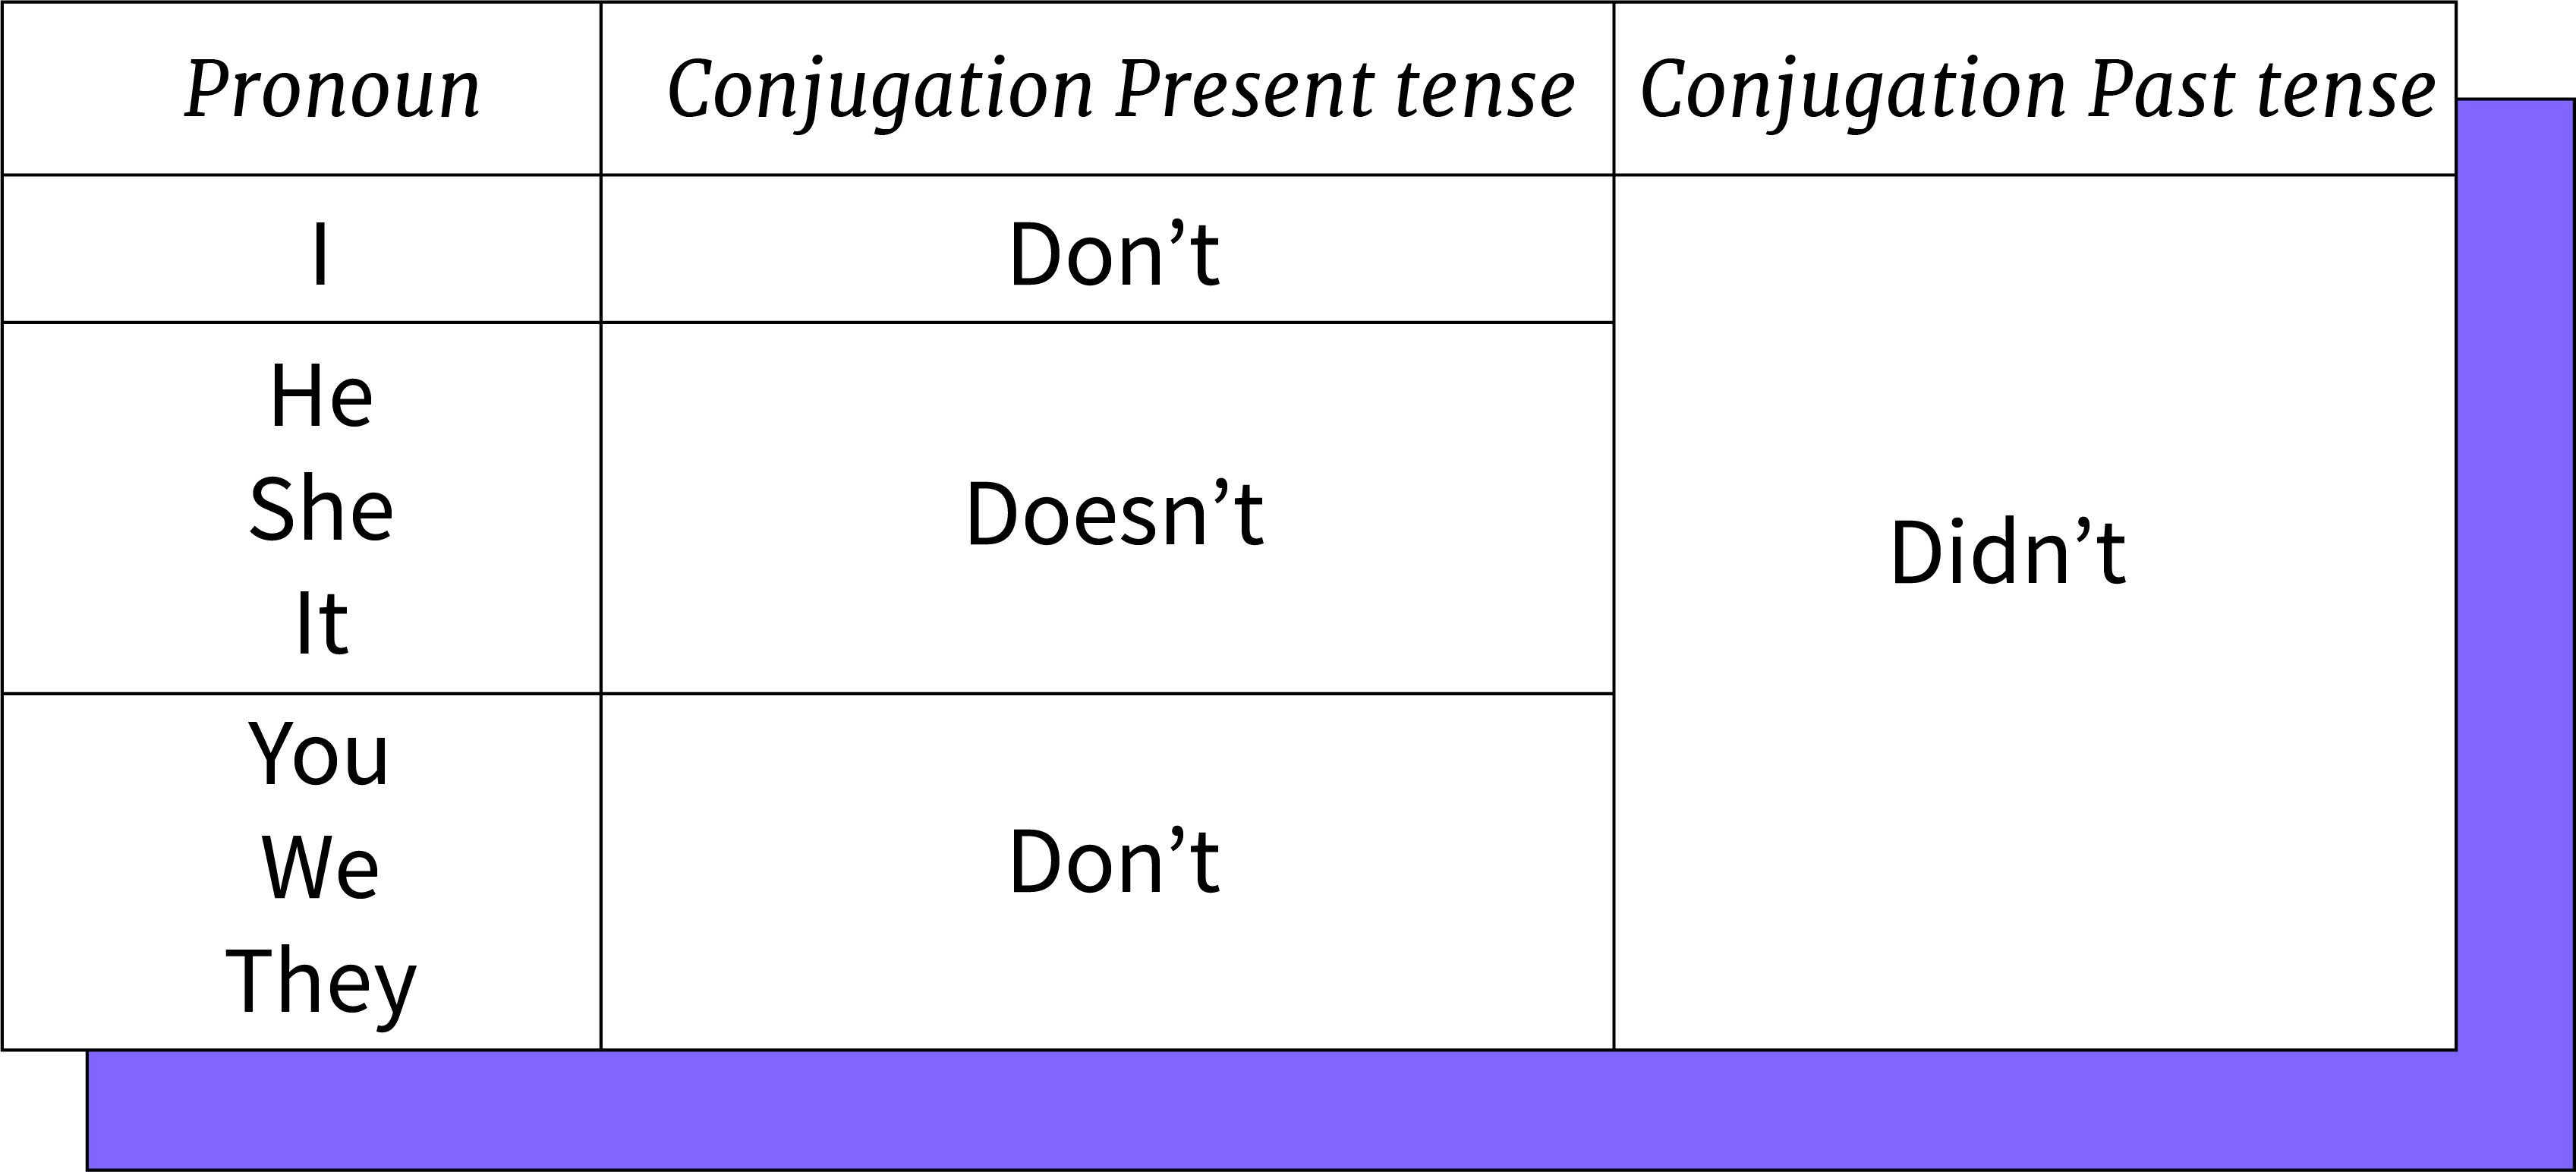 Tabela de conjungação e contração negativa de Do e Did.